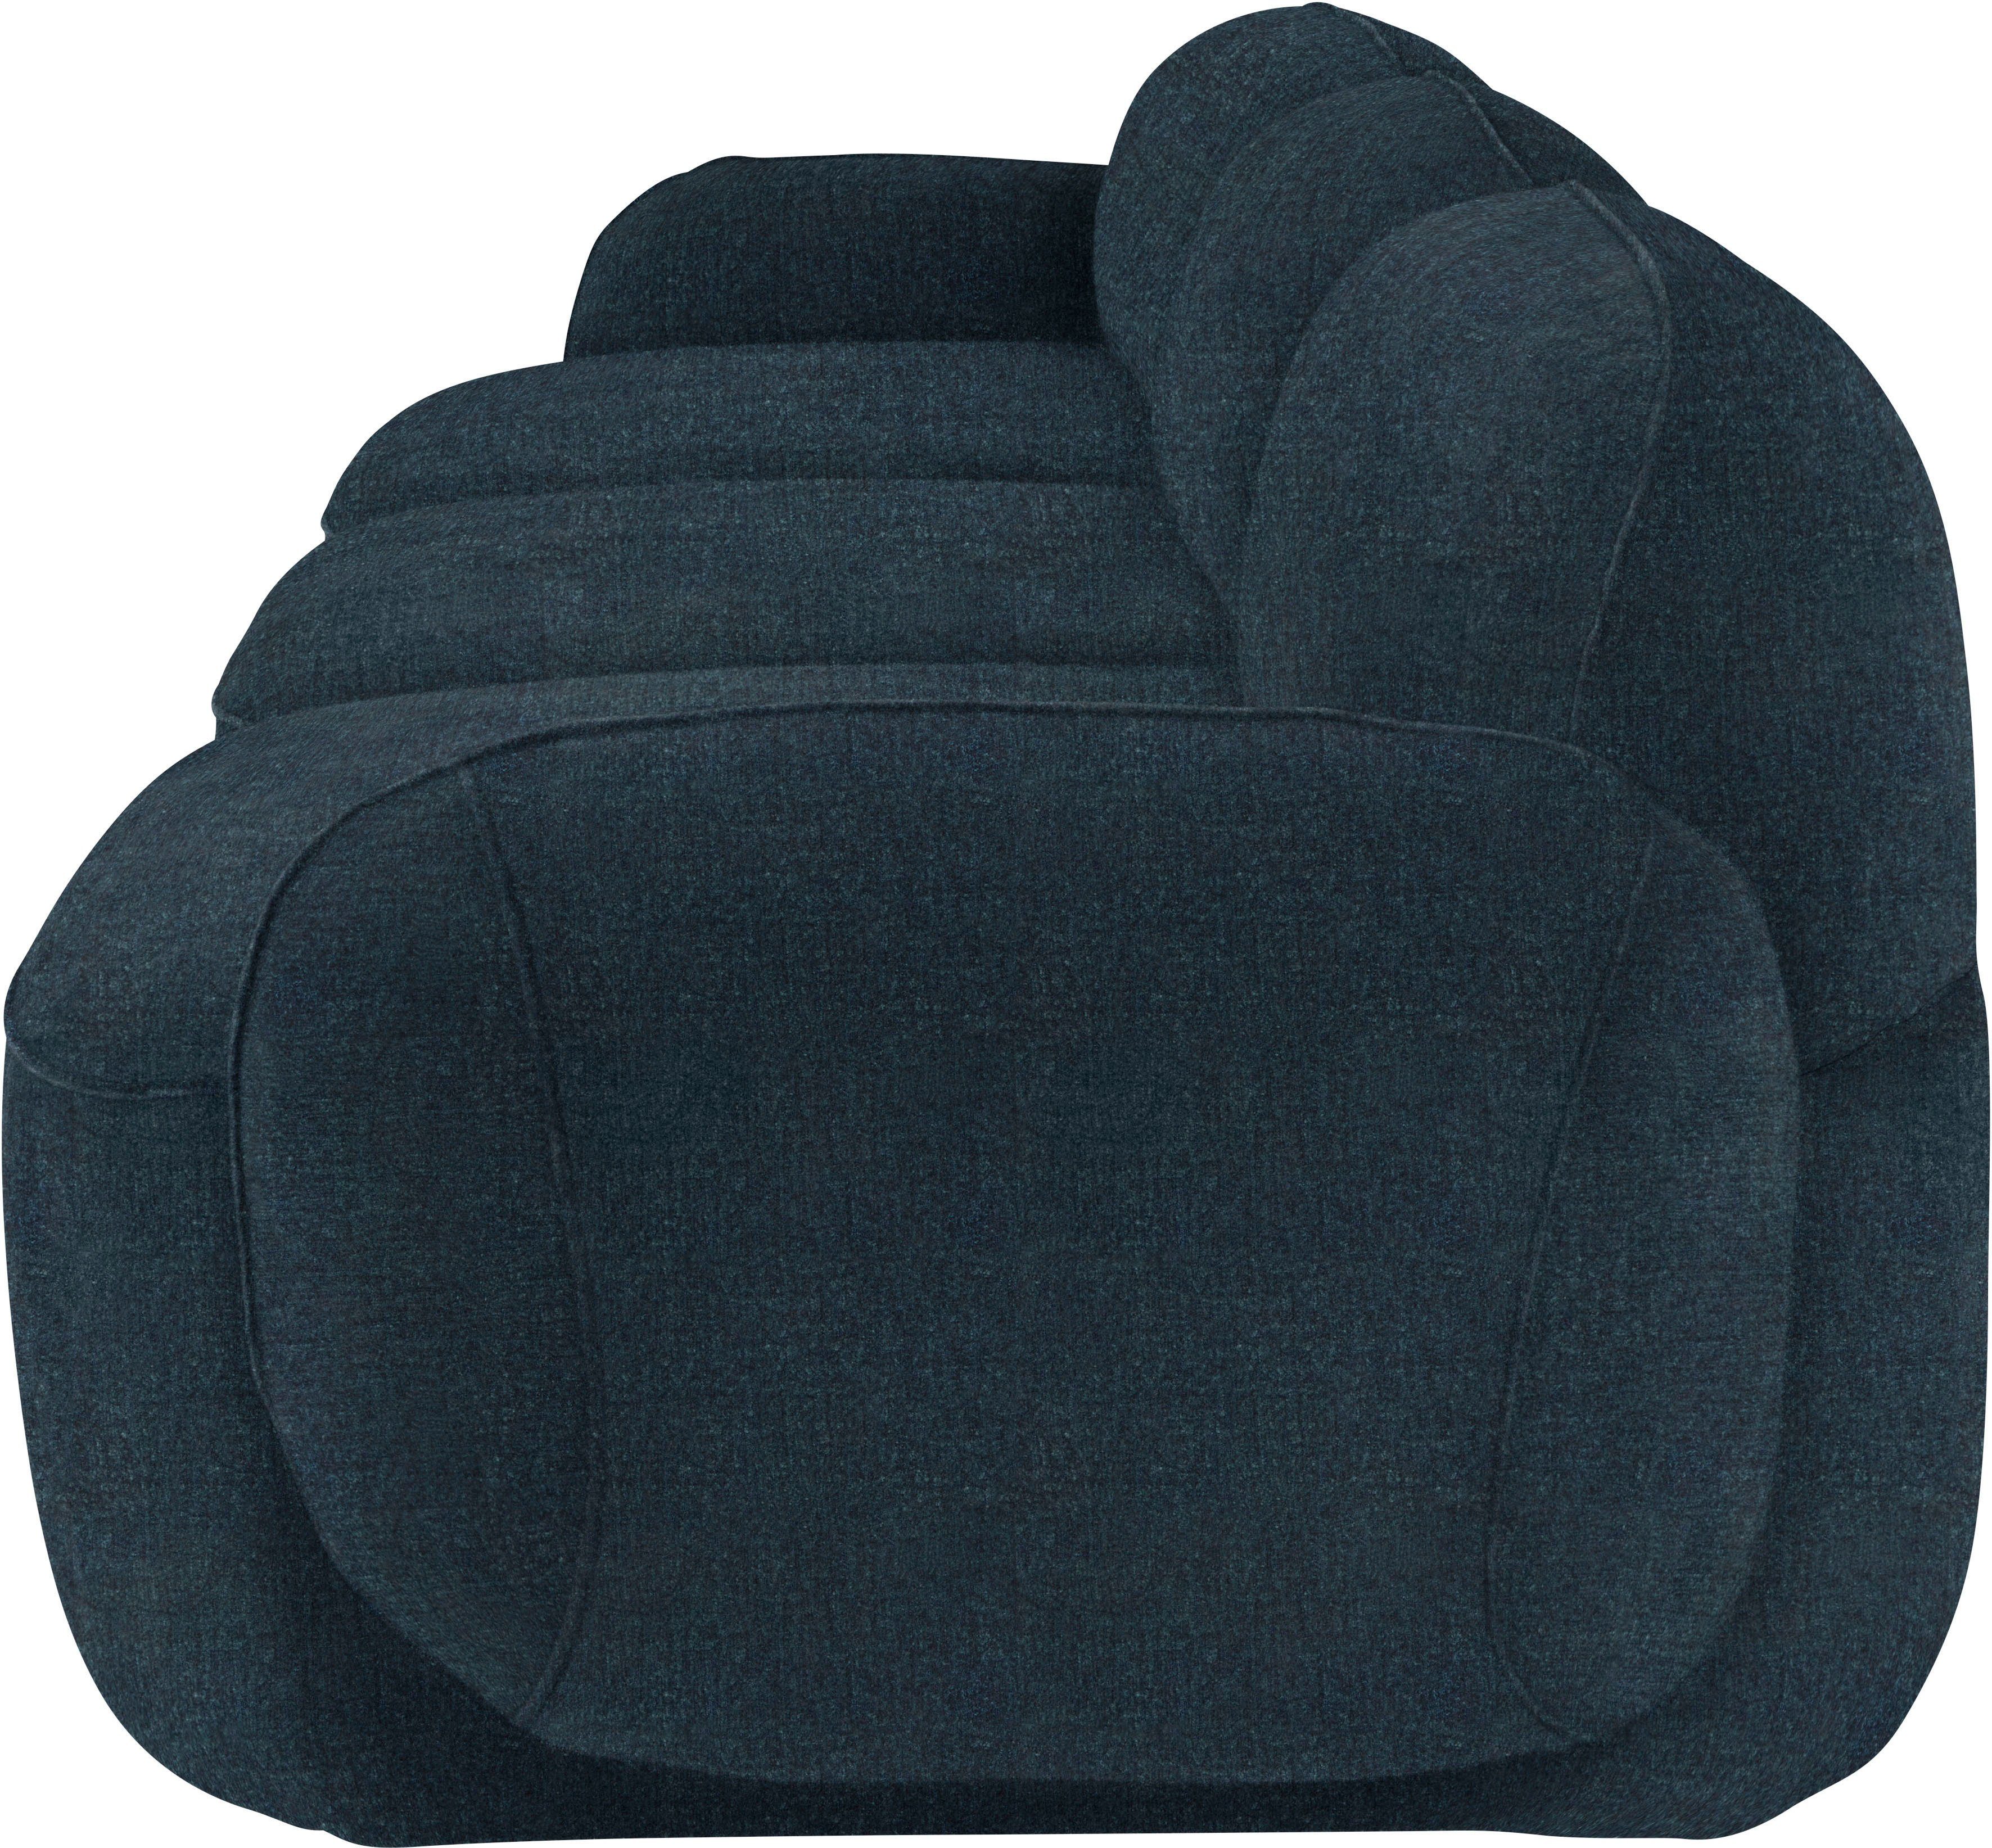 Bubble, Memoryschaum, furninova komfortabel Design im skandinavischen durch 3,5-Sitzer